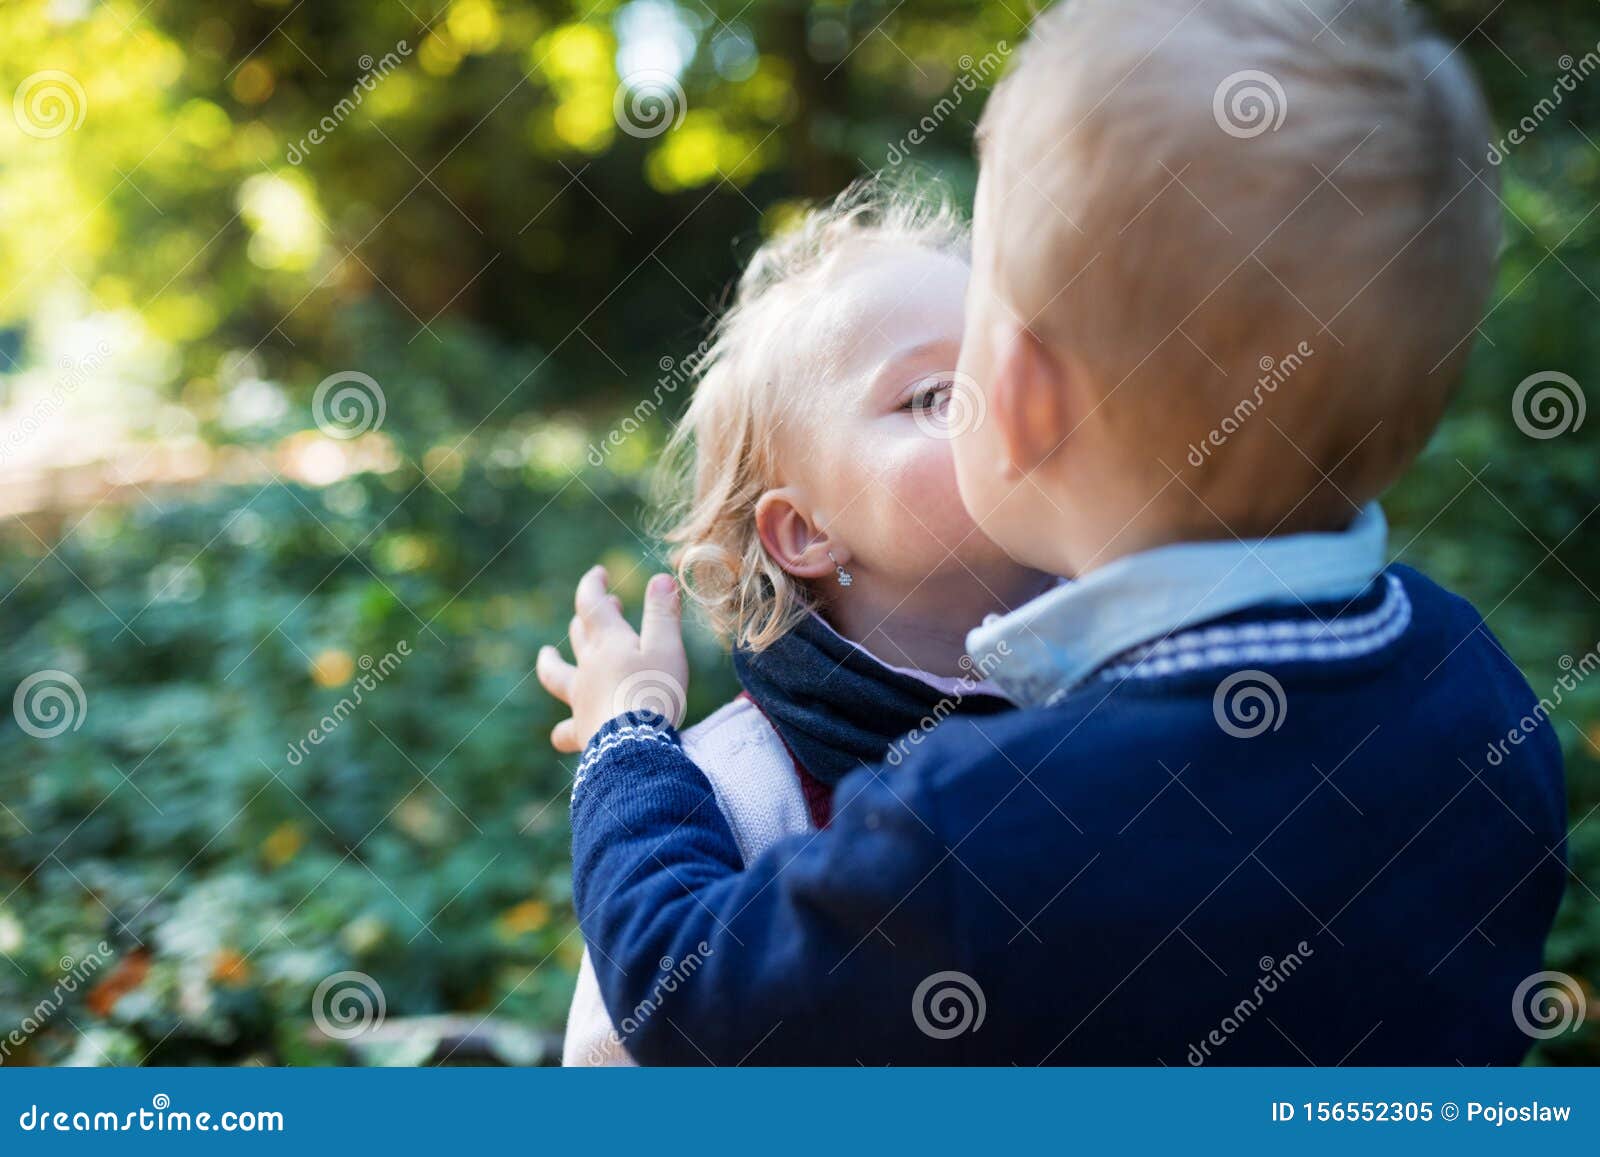 Поцеловал мальчика в живот. Мальчика девочку которую целуются в лесу.